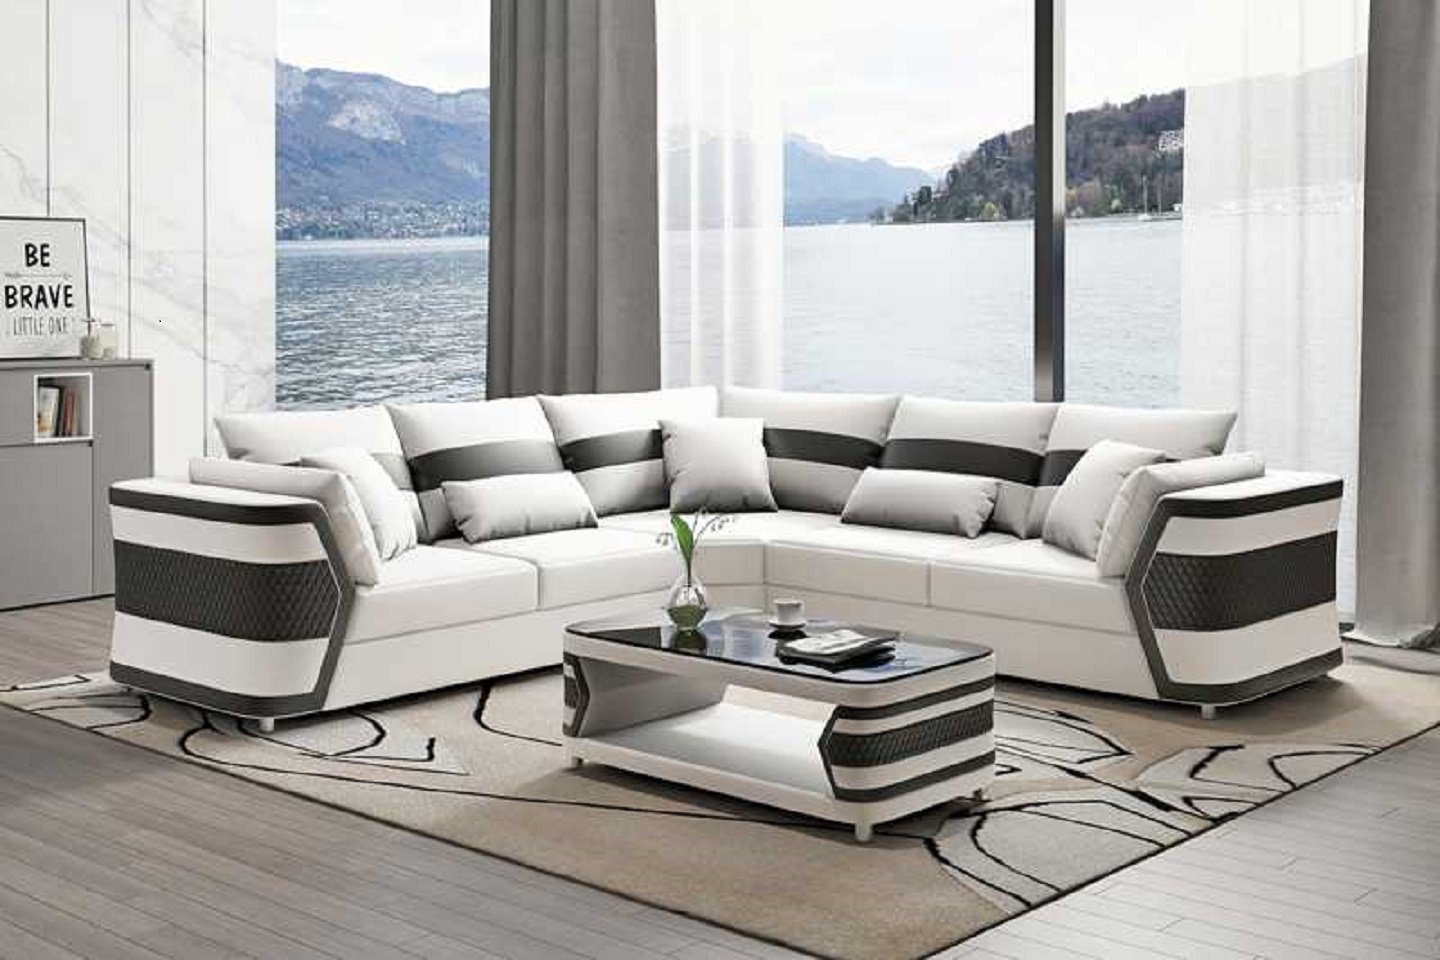 JVmoebel Ecksofa Luxus Ledersofa Ecksofa Couch Made Sofa 3 Teile, in Modern, Wohnzimmer Europe Weiß